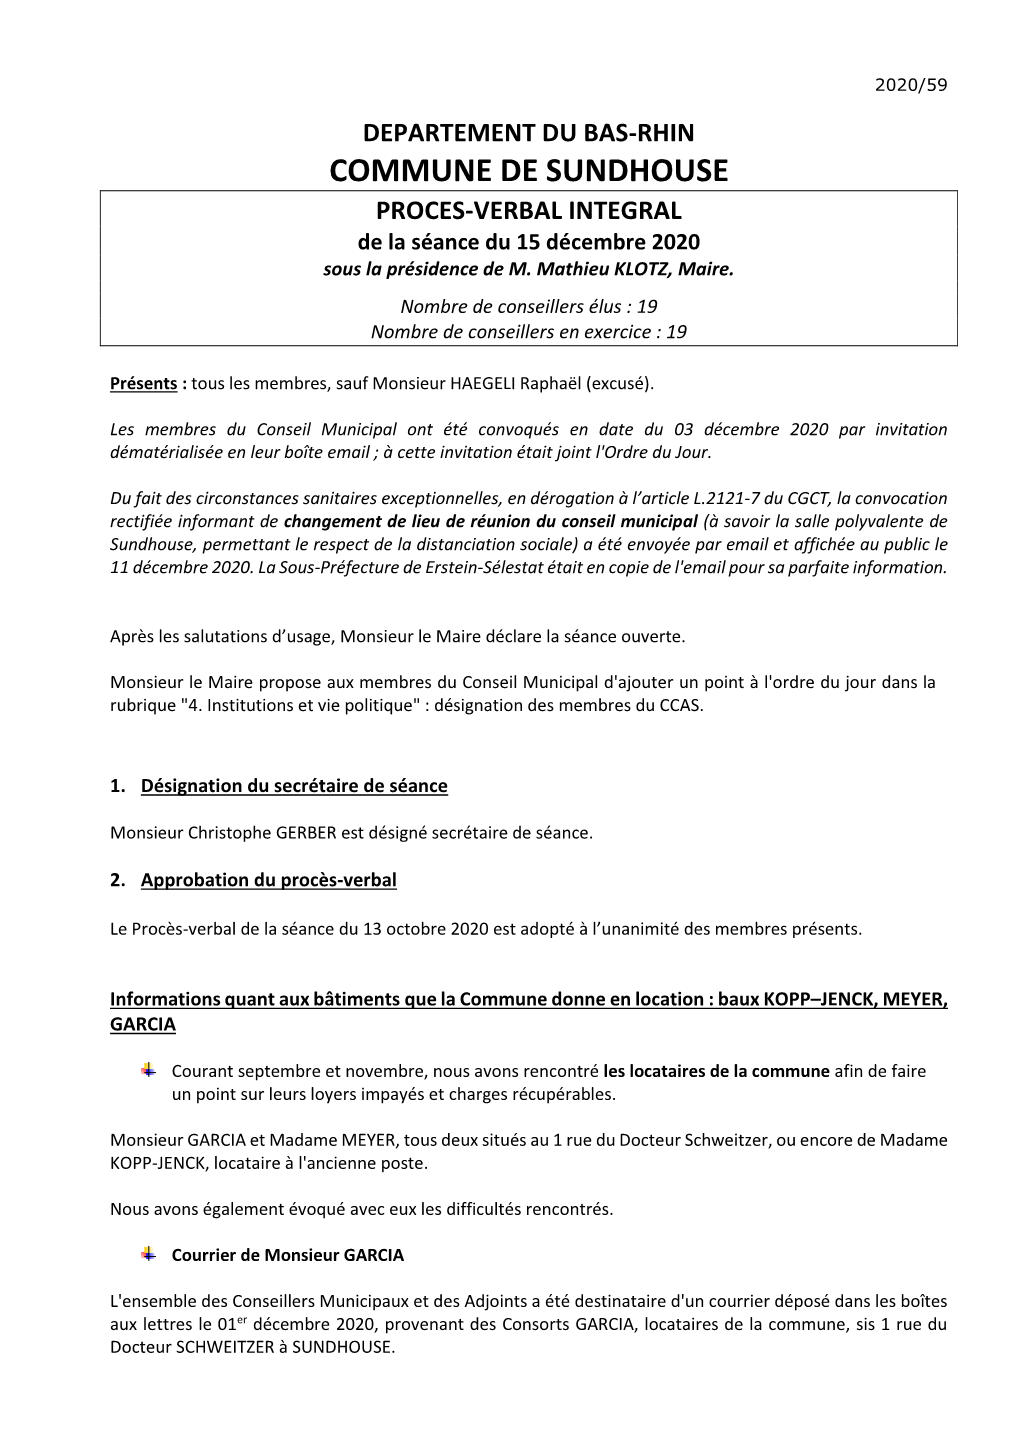 COMMUNE DE SUNDHOUSE PROCES-VERBAL INTEGRAL De La Séance Du 15 Décembre 2020 Sous La Présidence De M